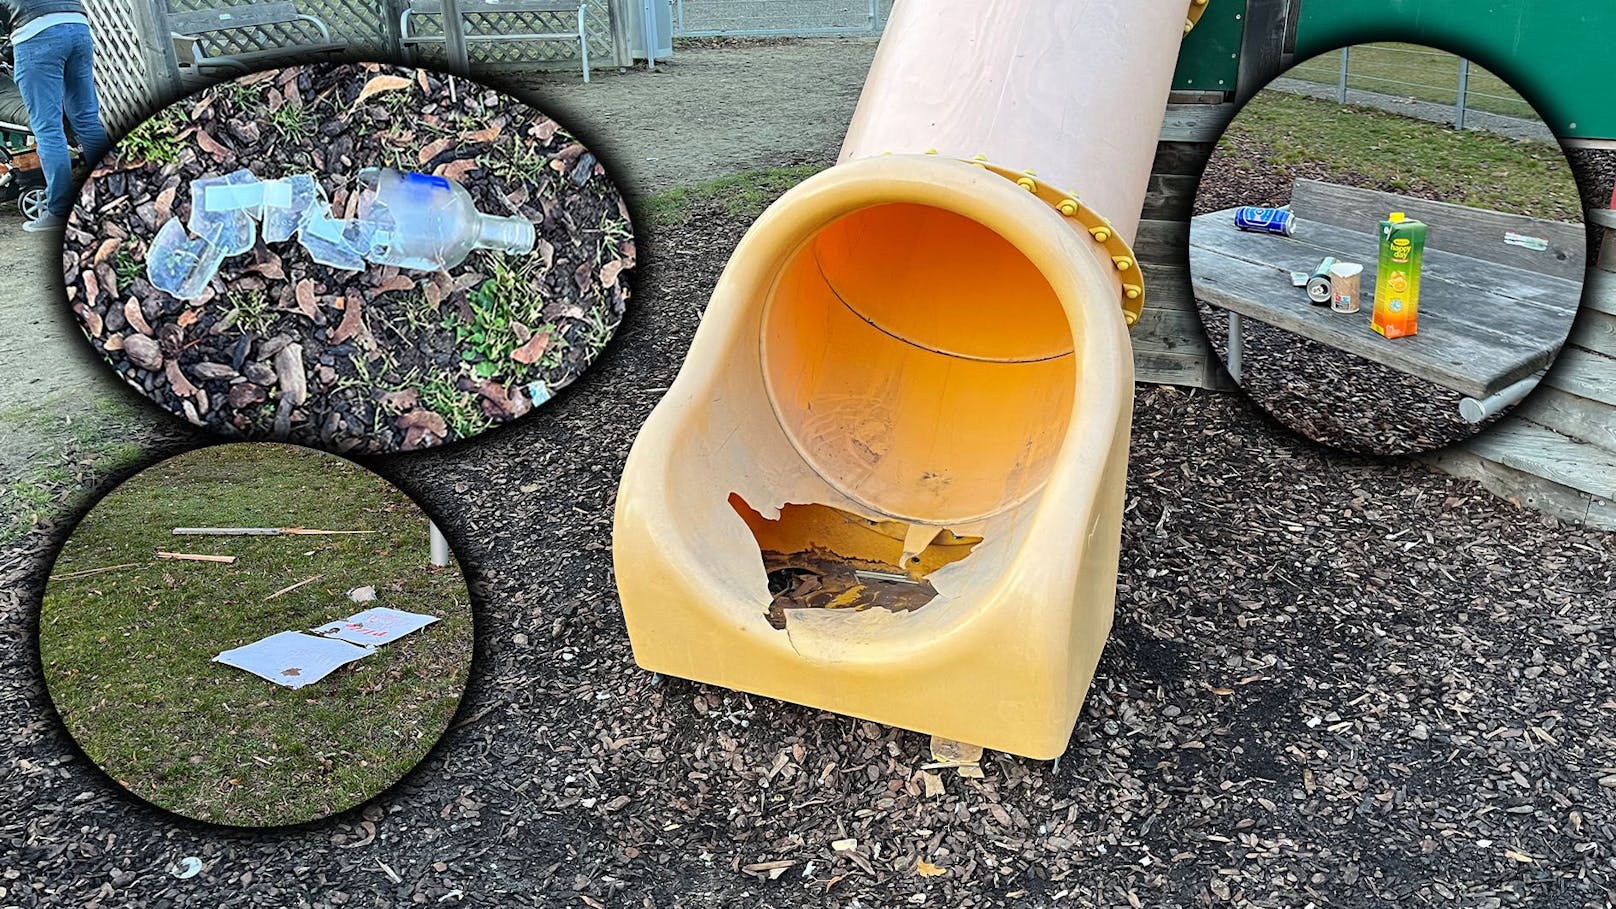 Zersprengte Rutschen, zerbrochene Vodkaflaschen und Pizzakartons: Der Spielplatz ist für Kinder nicht betretbar.